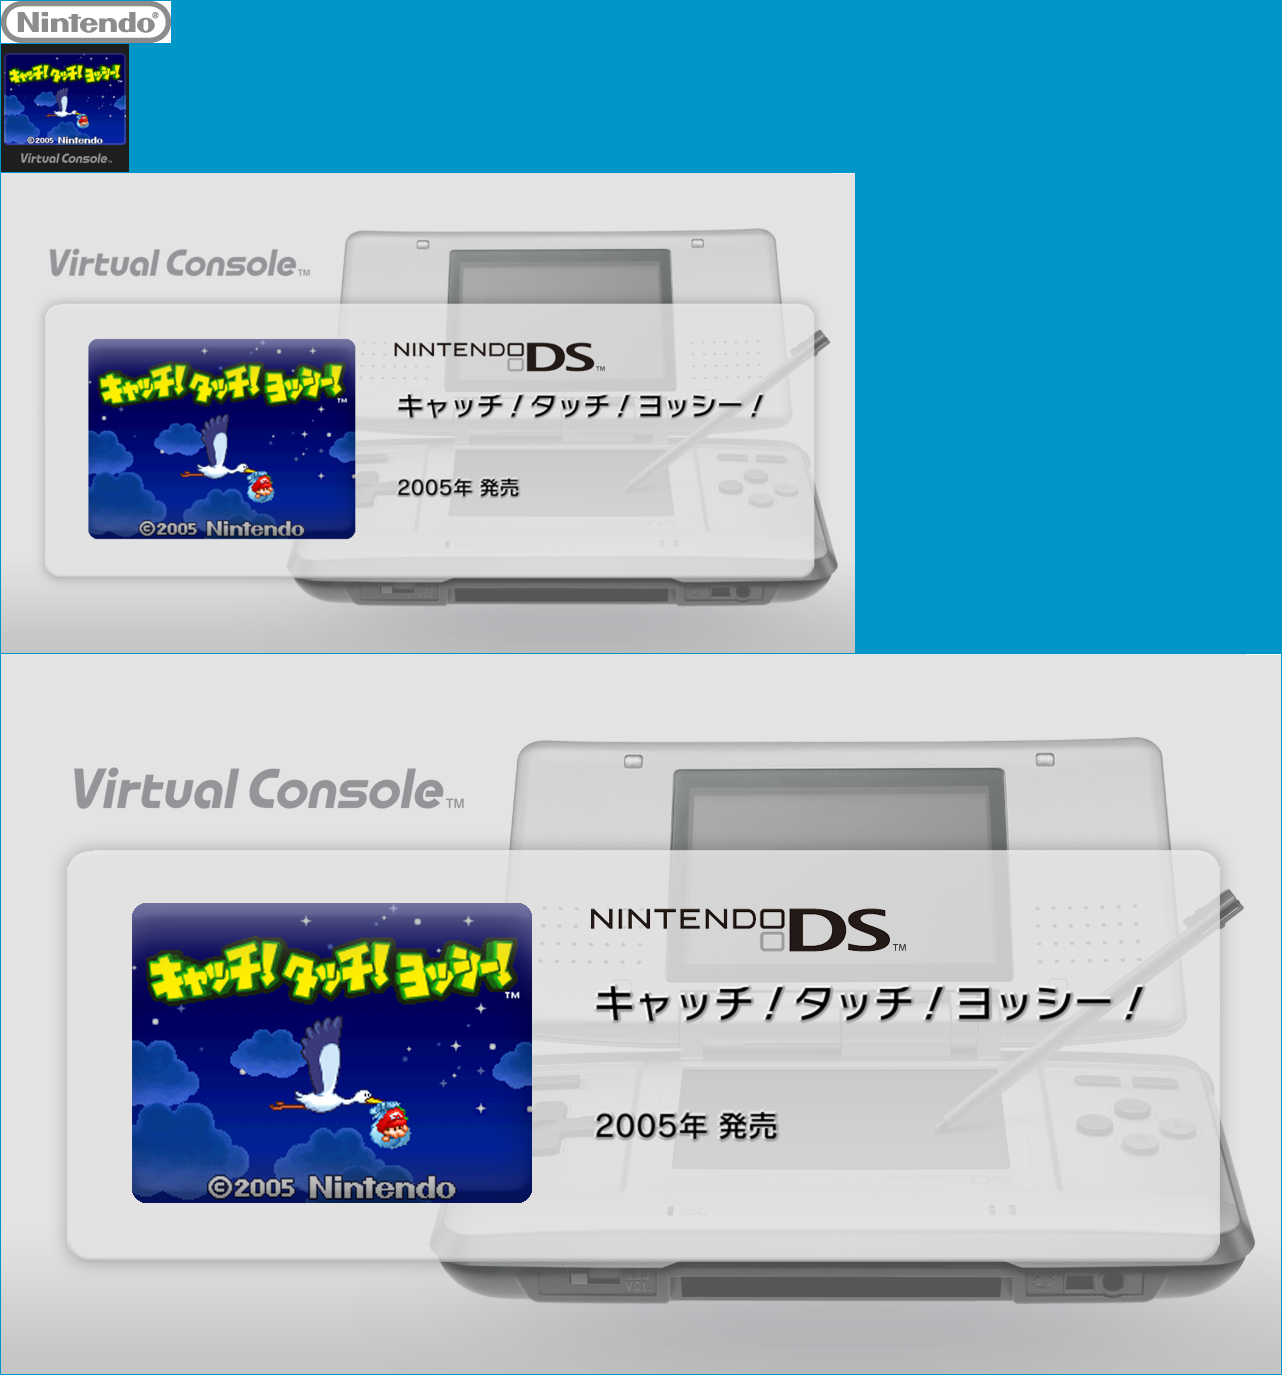 Virtual Console - Catch! Touch! Yoshi!